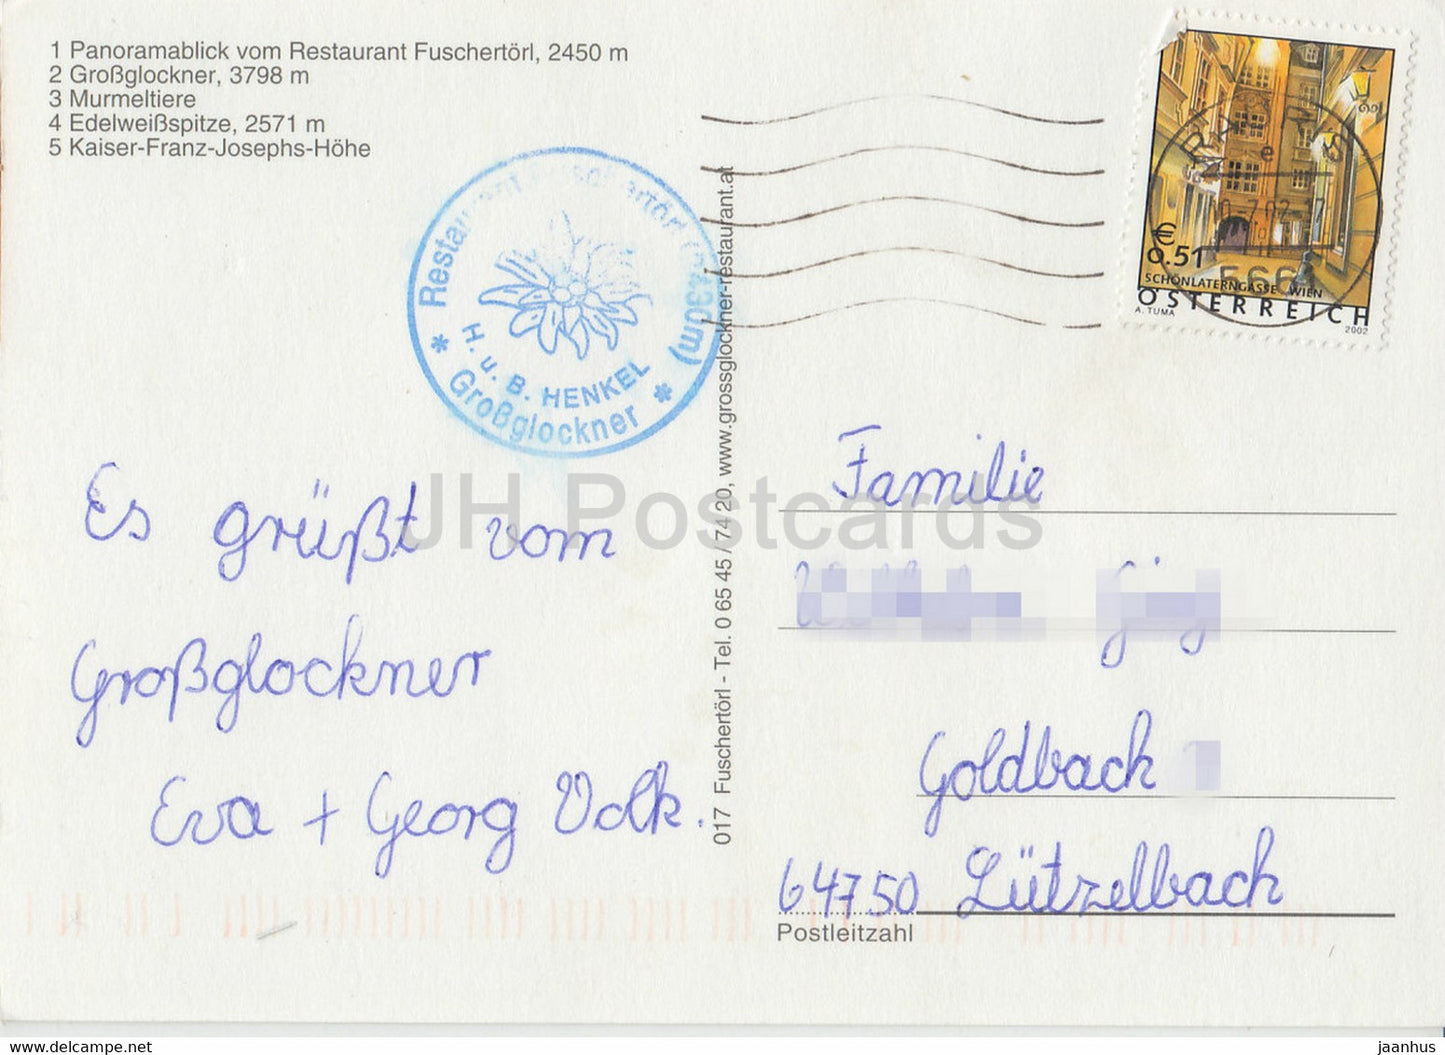 Großglockner - Fuschertorl 2450 m - Murmeltiere - Edelweißspitze - Murmeltier - Tiere - 2002 - Österreich - gebraucht